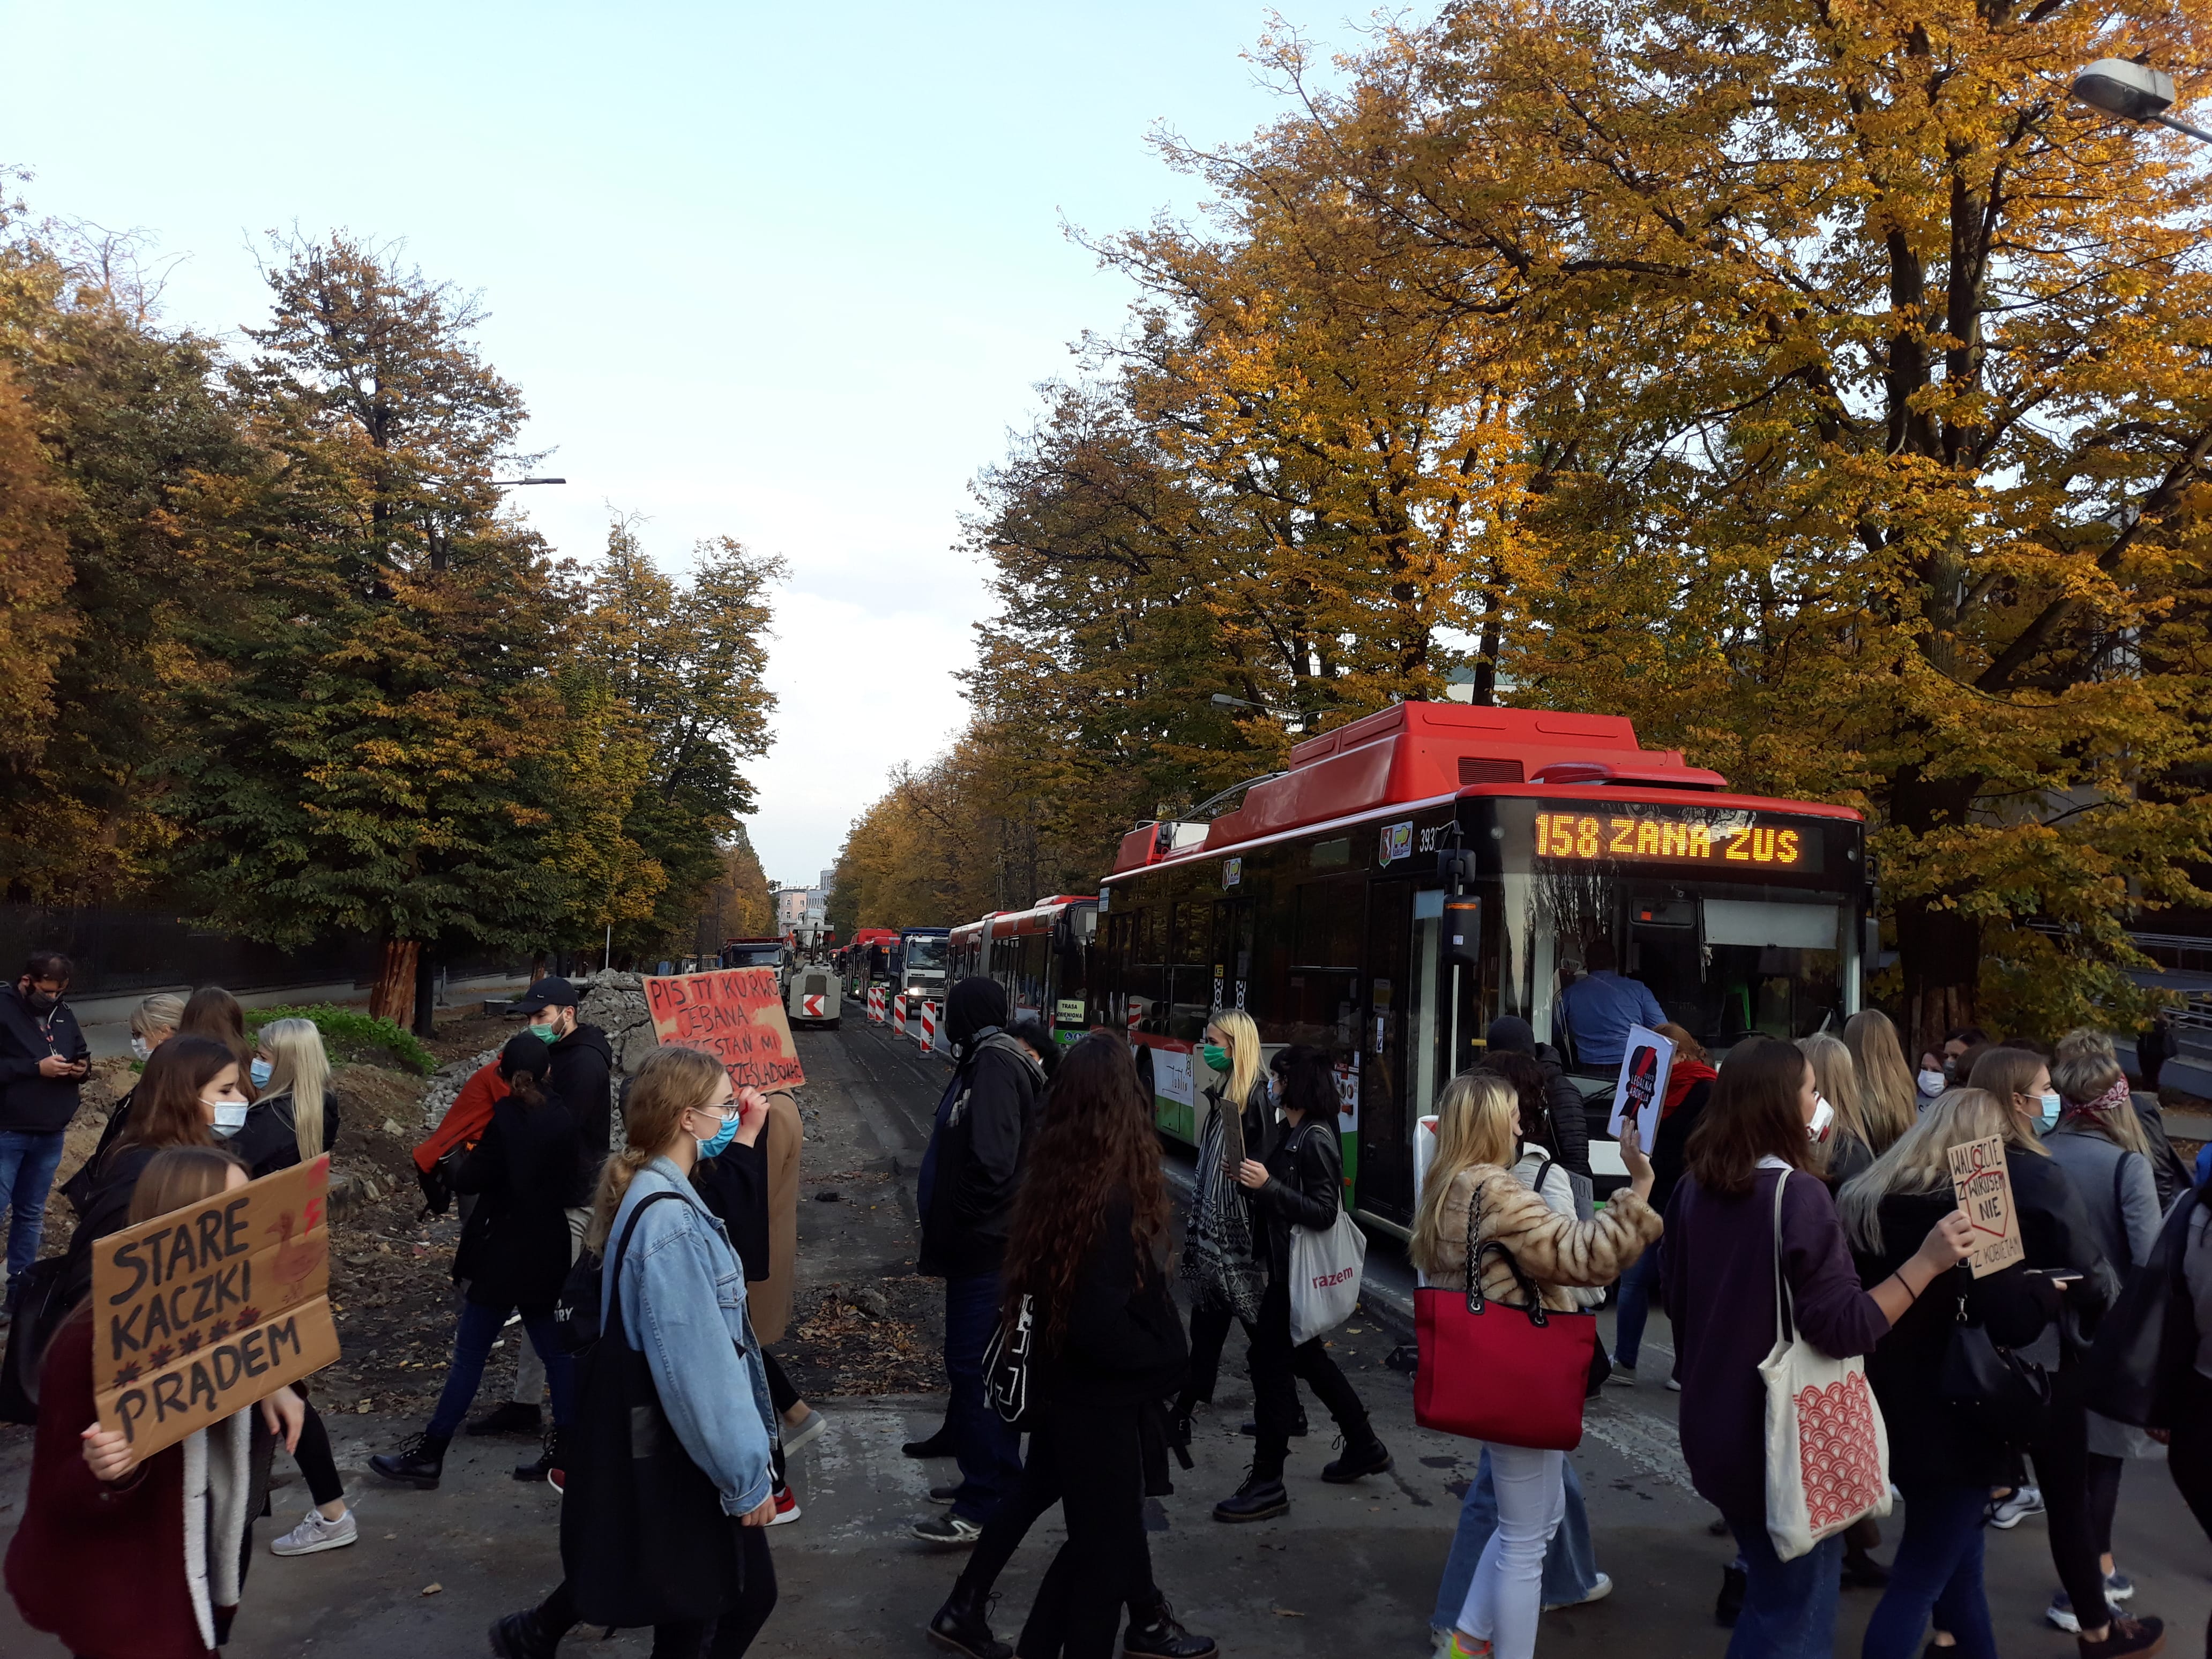 Strajk Kobiet w Lublinie. Jutro "BLOKADA! #ToJestWojna" - manifestujący zablokują przejścia dla pieszych - Zdjęcie główne